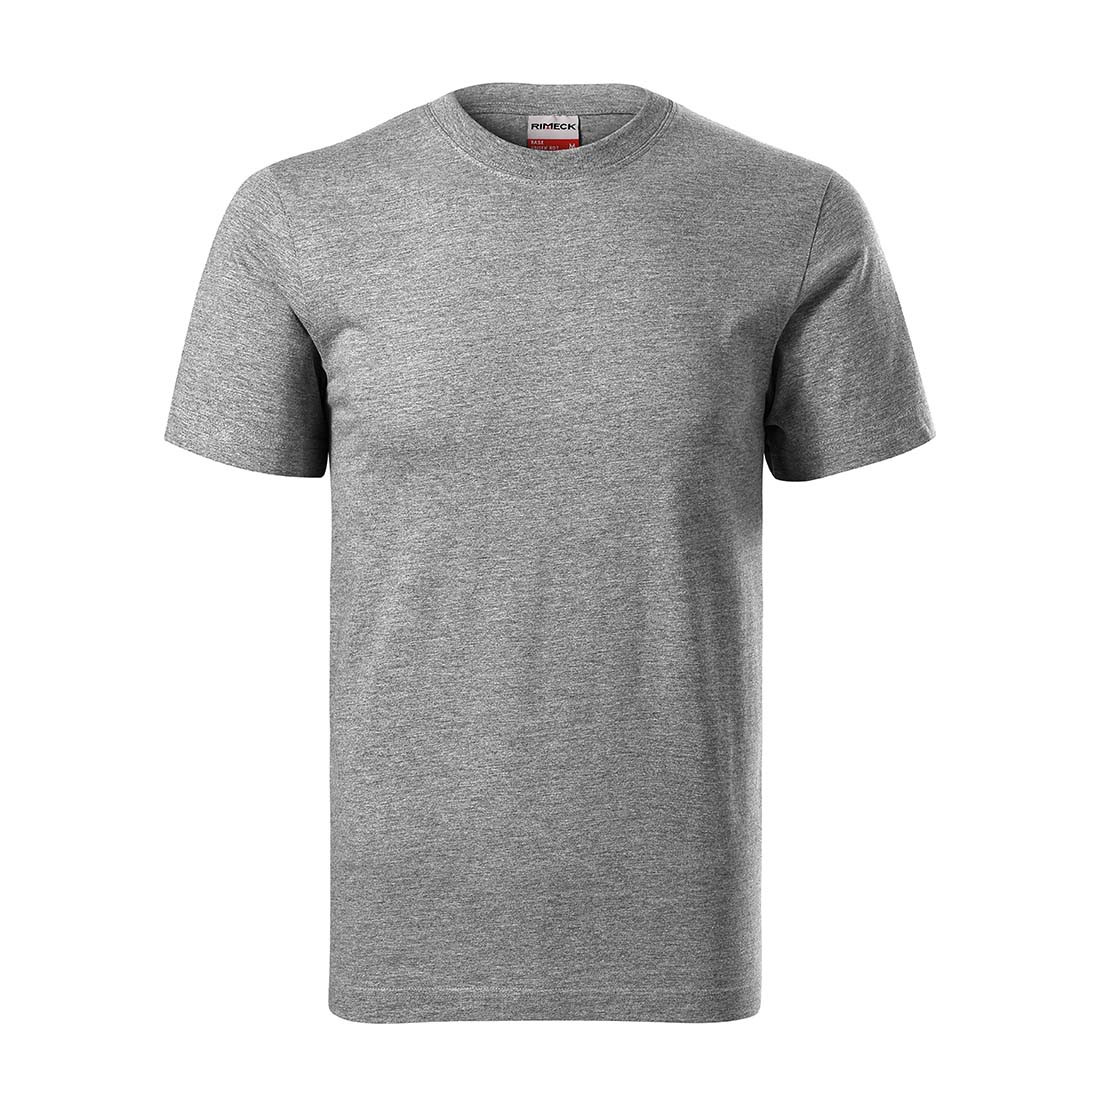 RECALL Unisex T-shirt - Safetywear